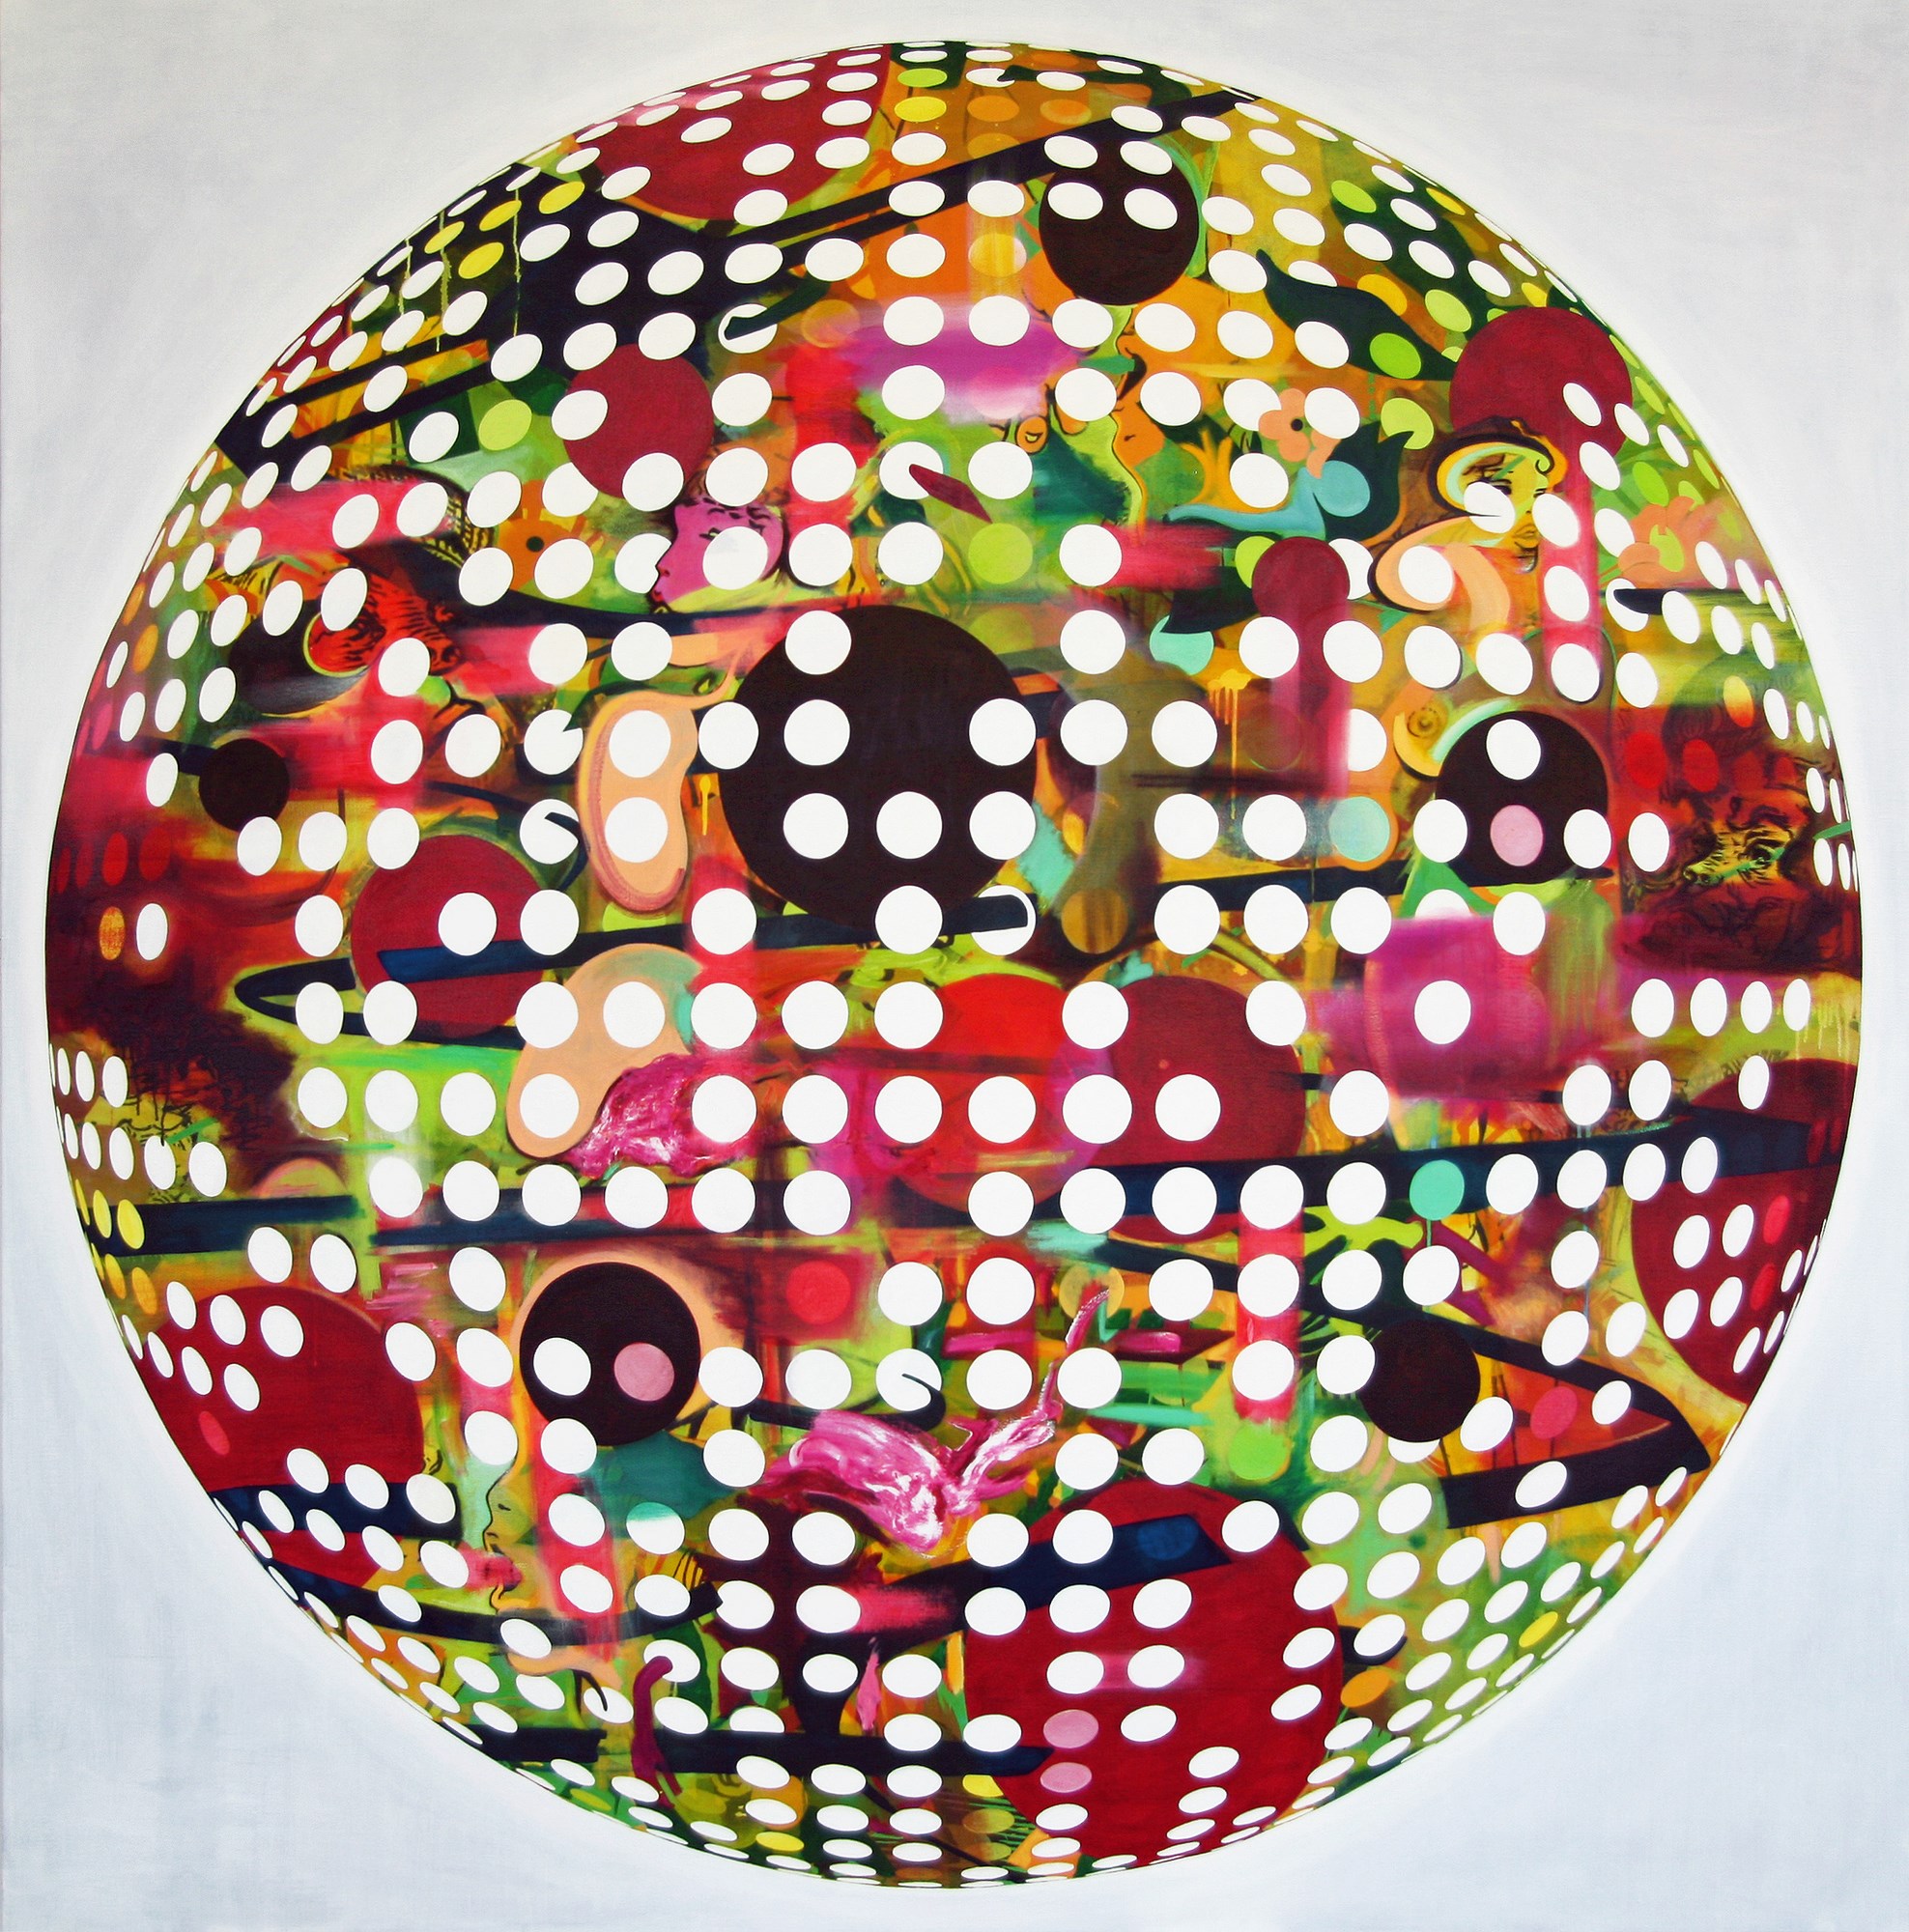 Esfera #10, 2012, óleo y acrílico sobre lienzo, 200 x 200 cm.